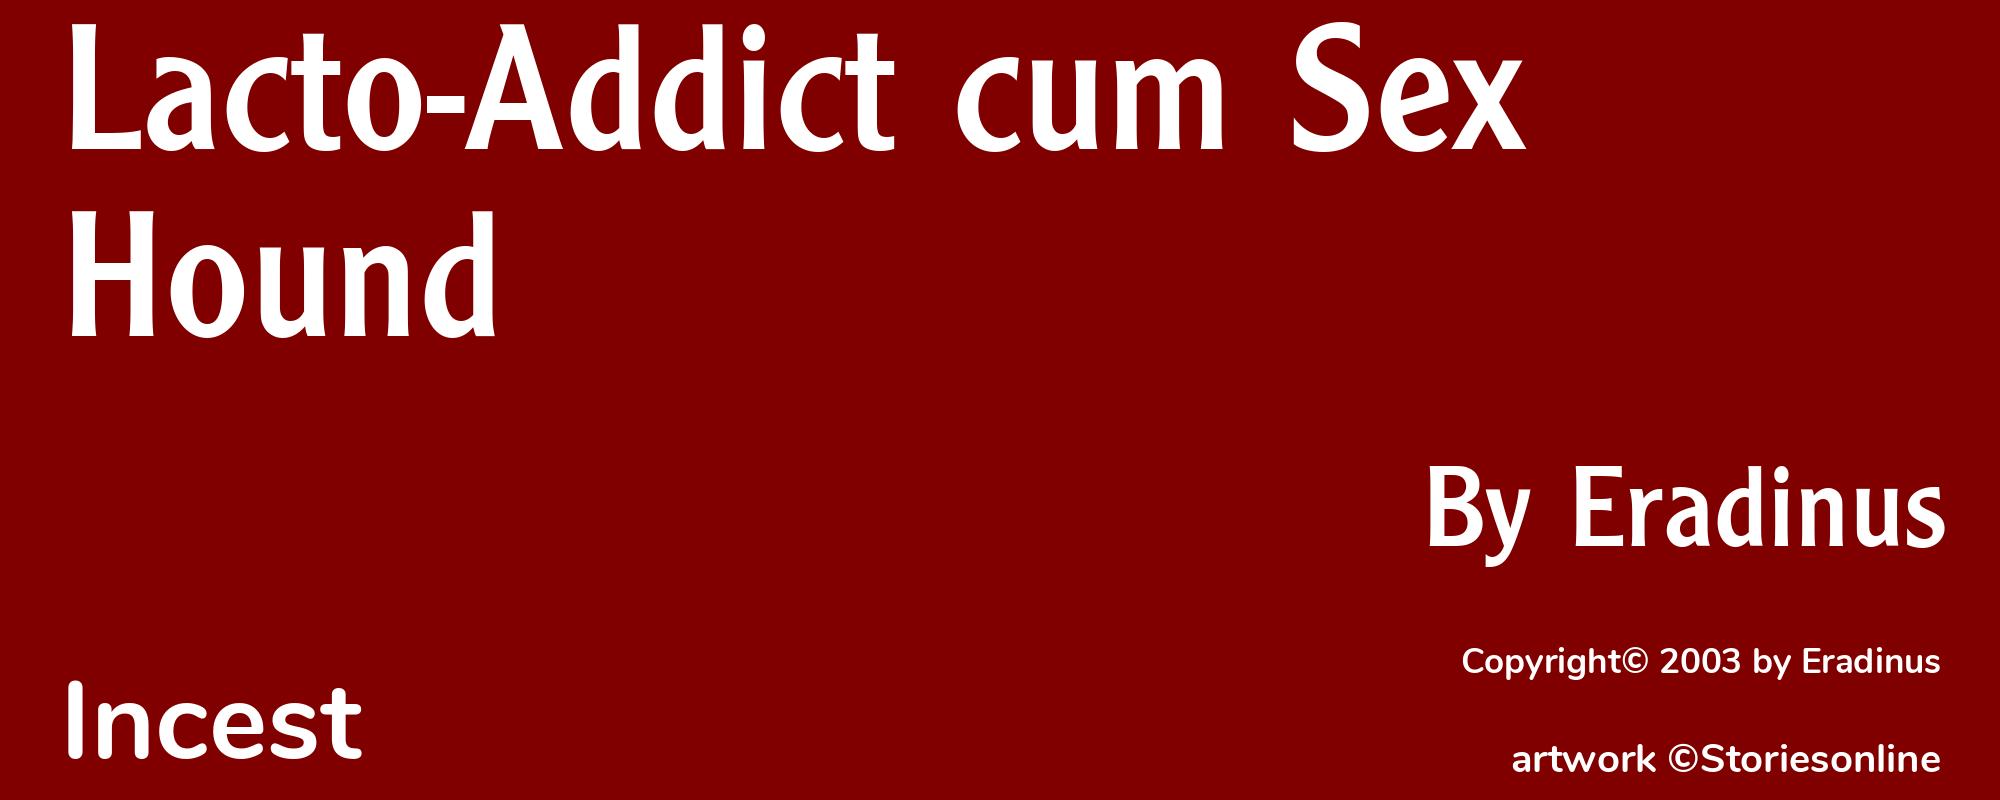 Lacto-Addict cum Sex Hound - Cover